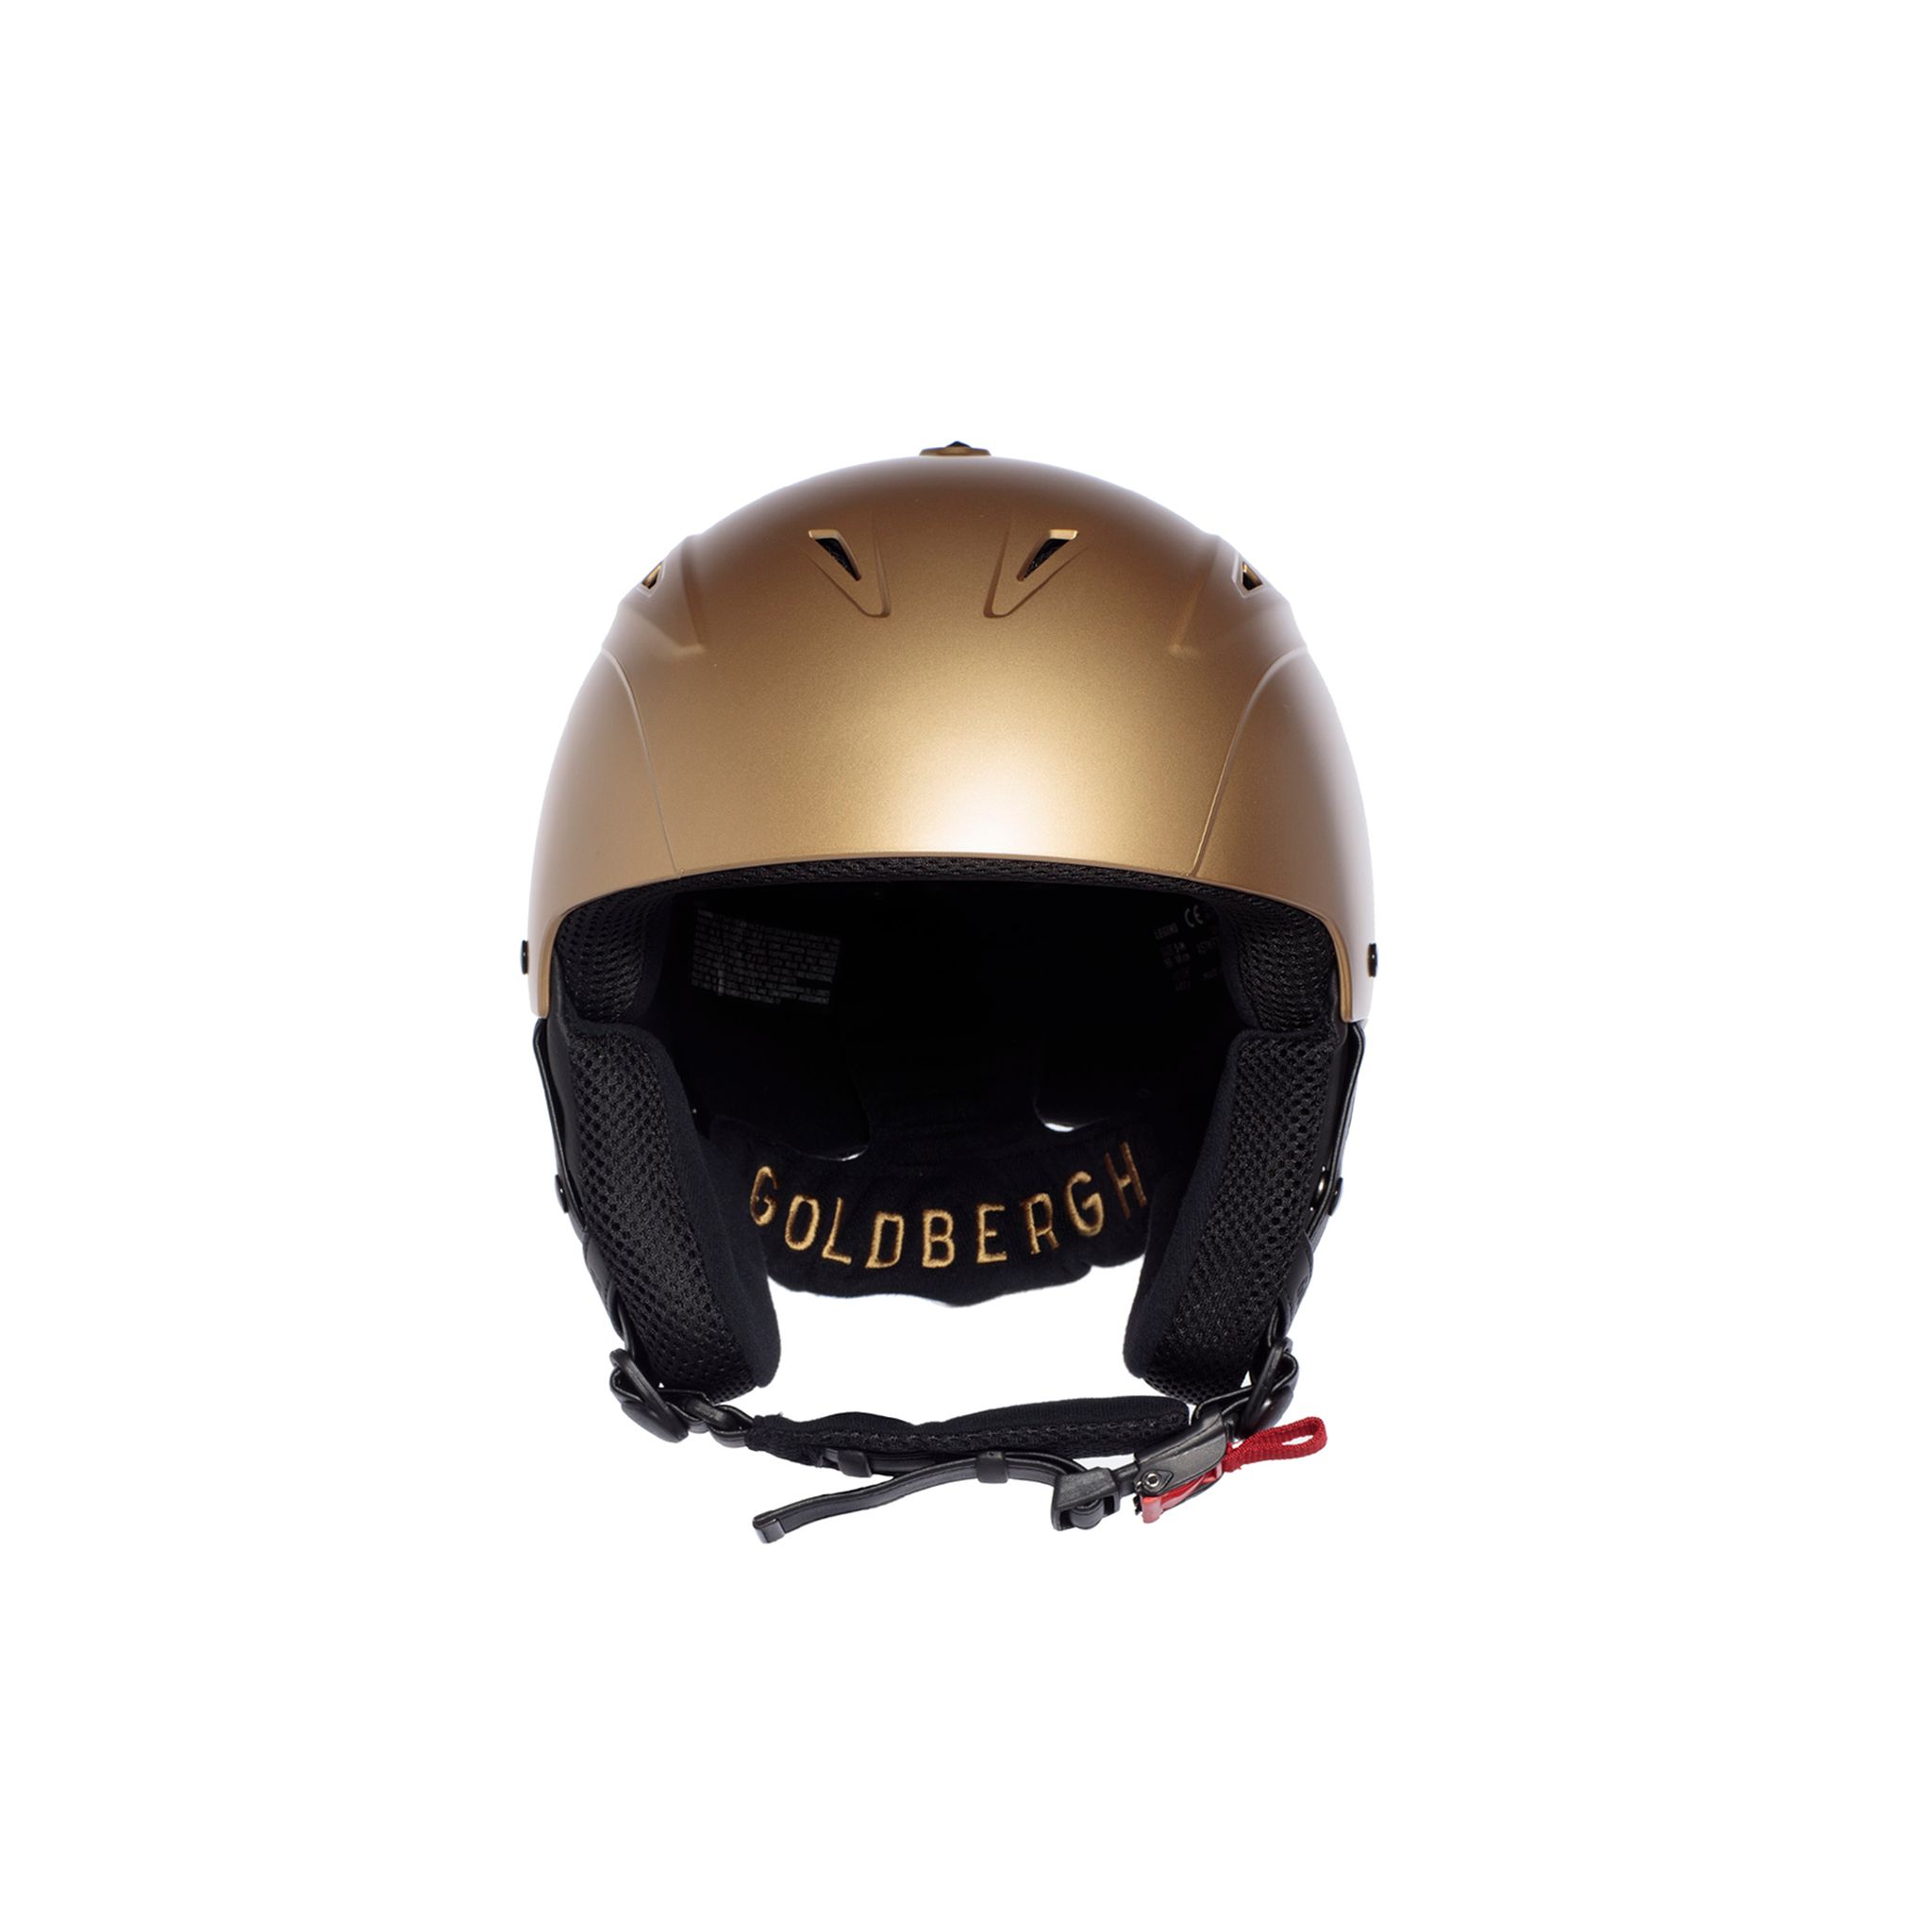  Ski Helmet	 -  goldbergh KHLOE Helmet